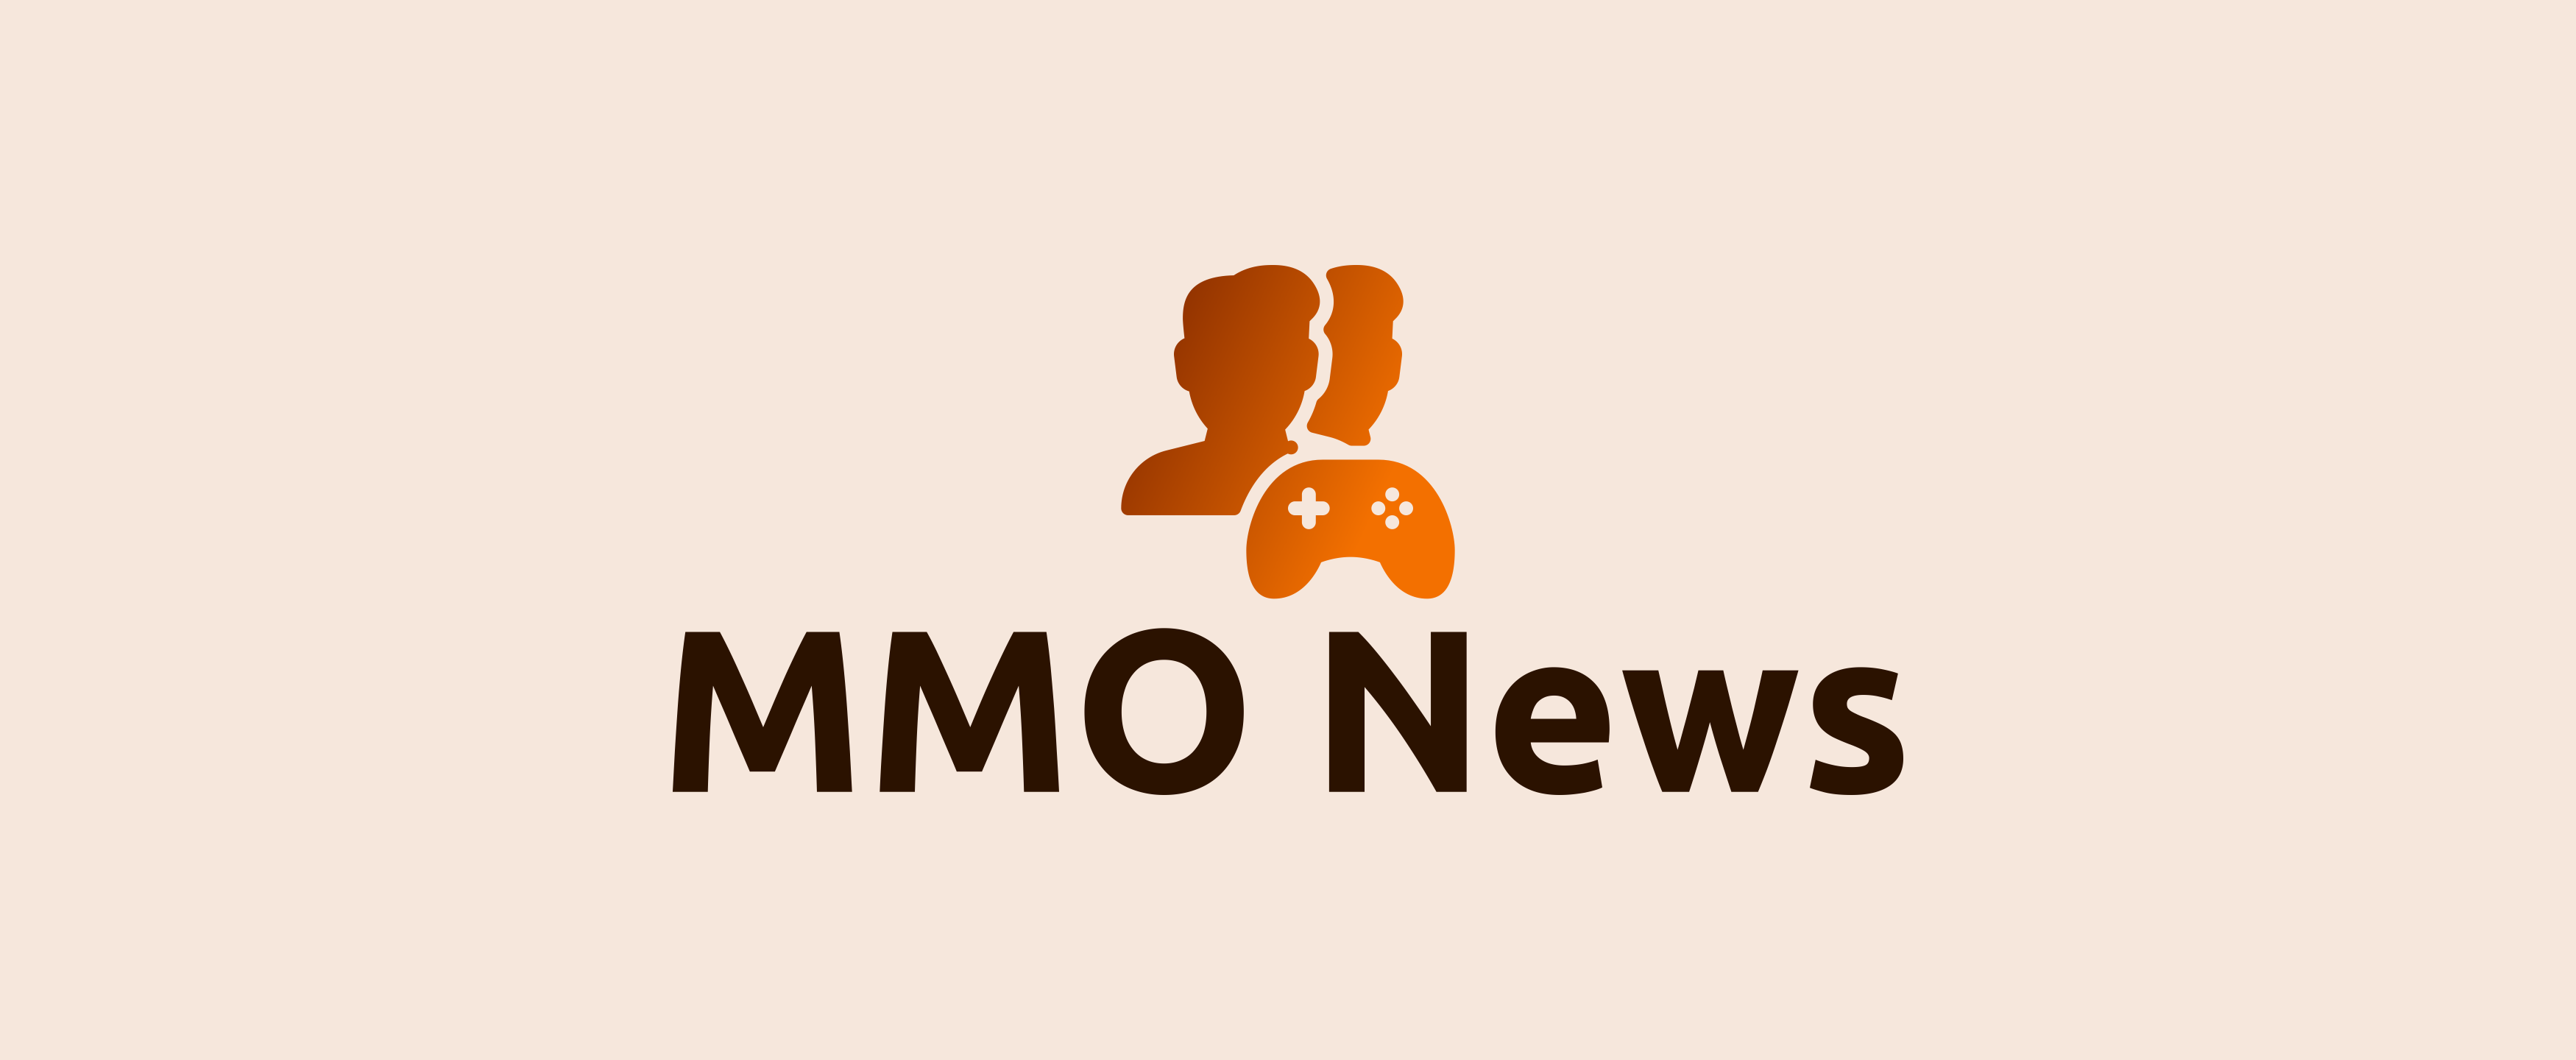 MMO News - Dein MMORPG-Podcast